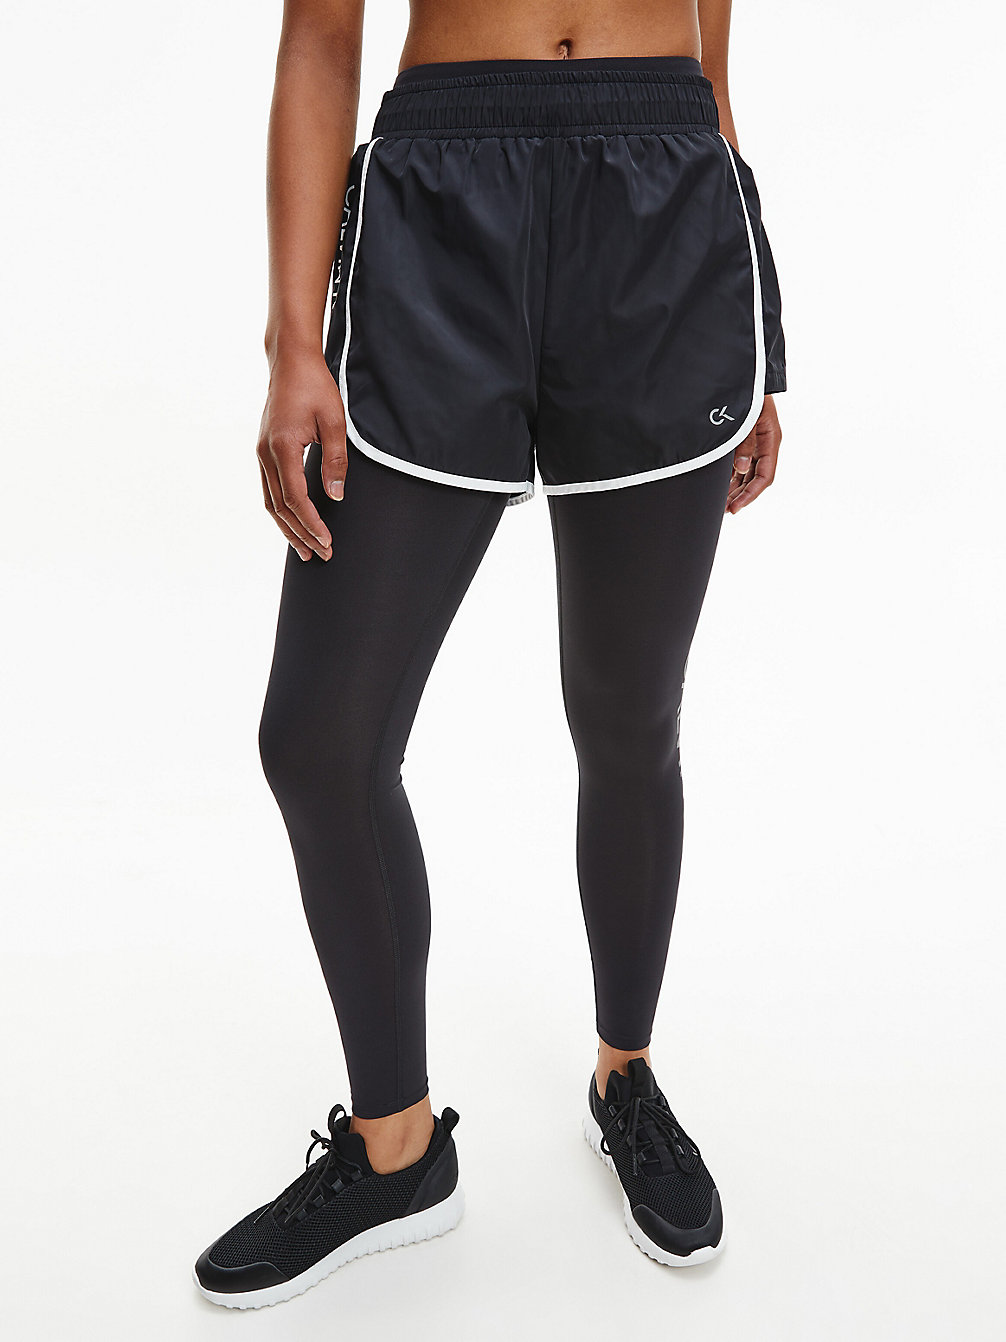 CK BLACK / BRIGHT WHITE Gym Shorts undefined women Calvin Klein